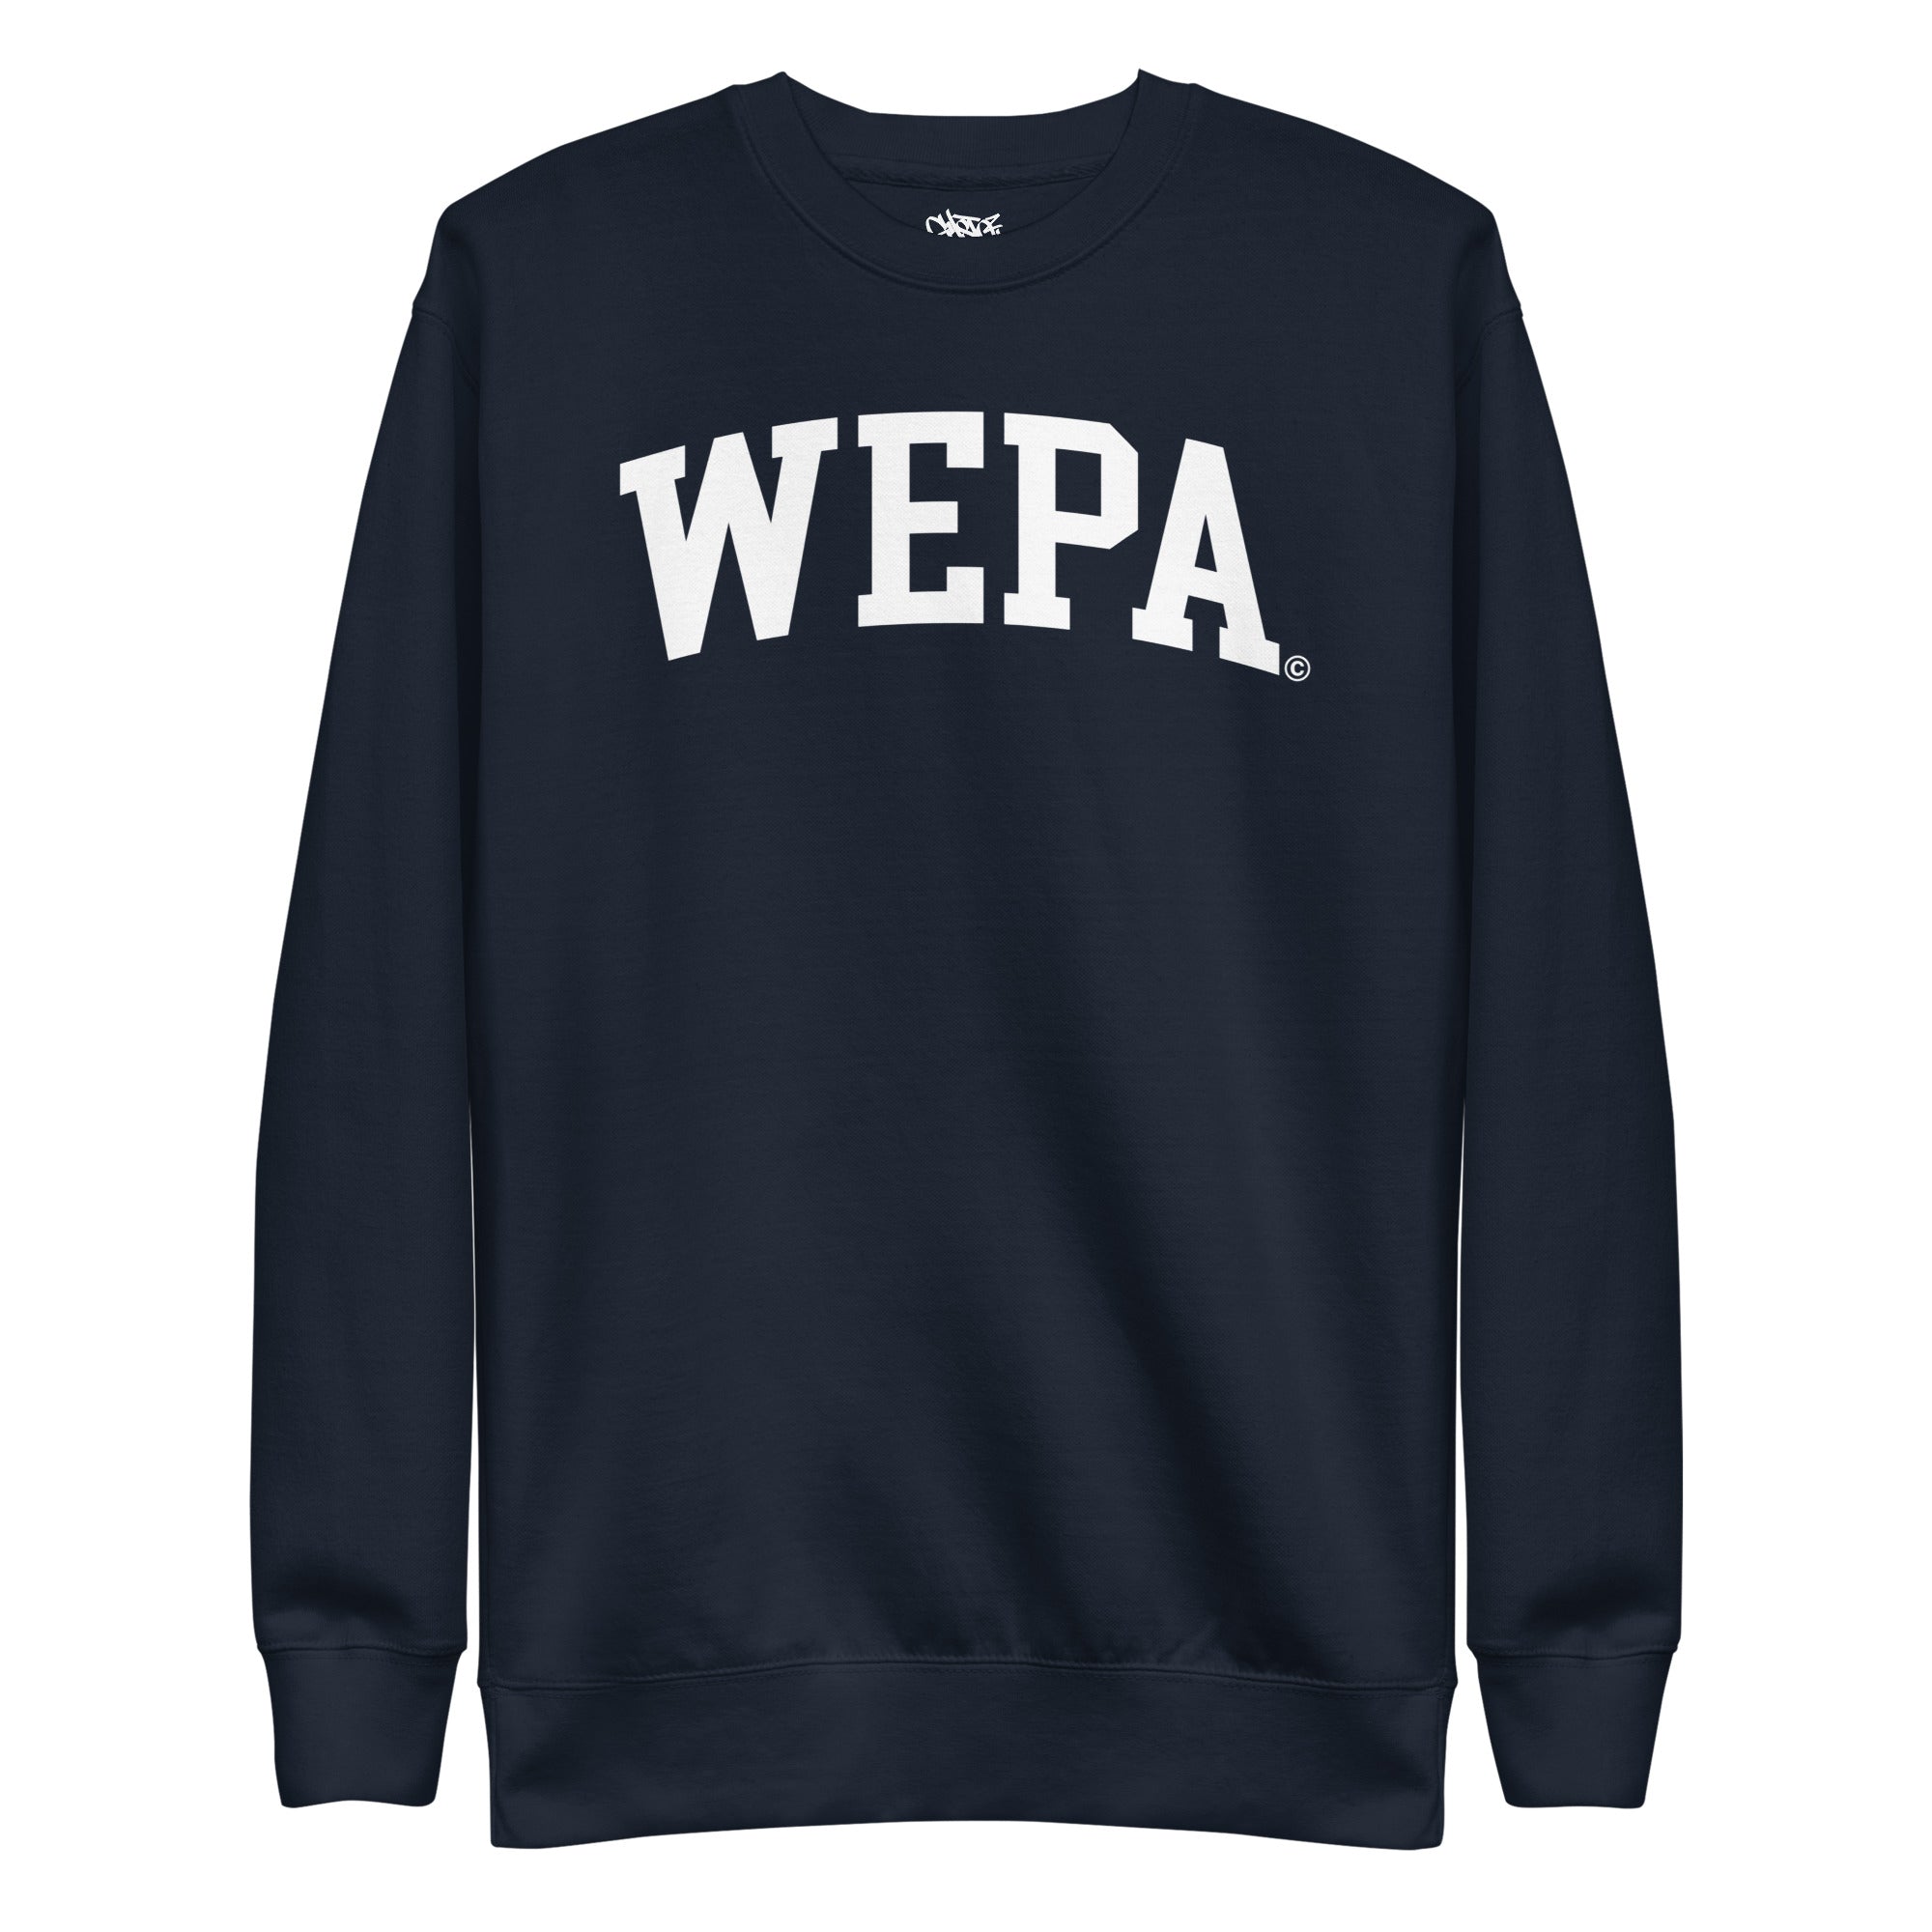 Wepa - Unisex Premium Sweatshirt